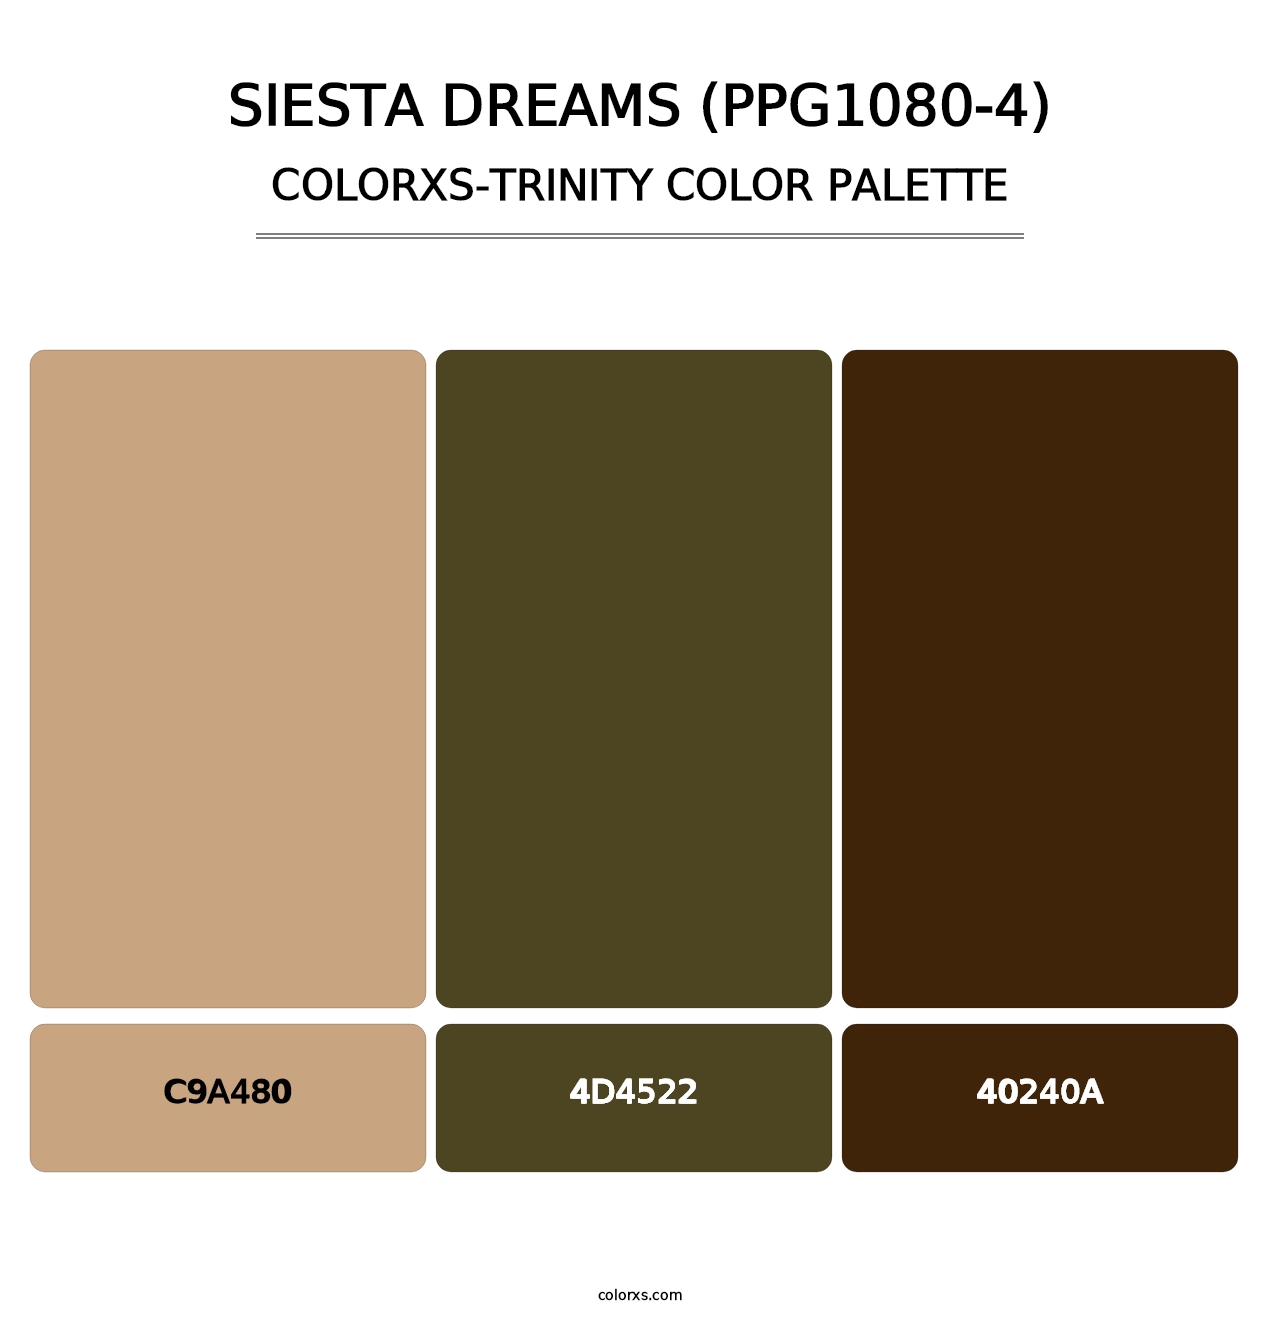 Siesta Dreams (PPG1080-4) - Colorxs Trinity Palette